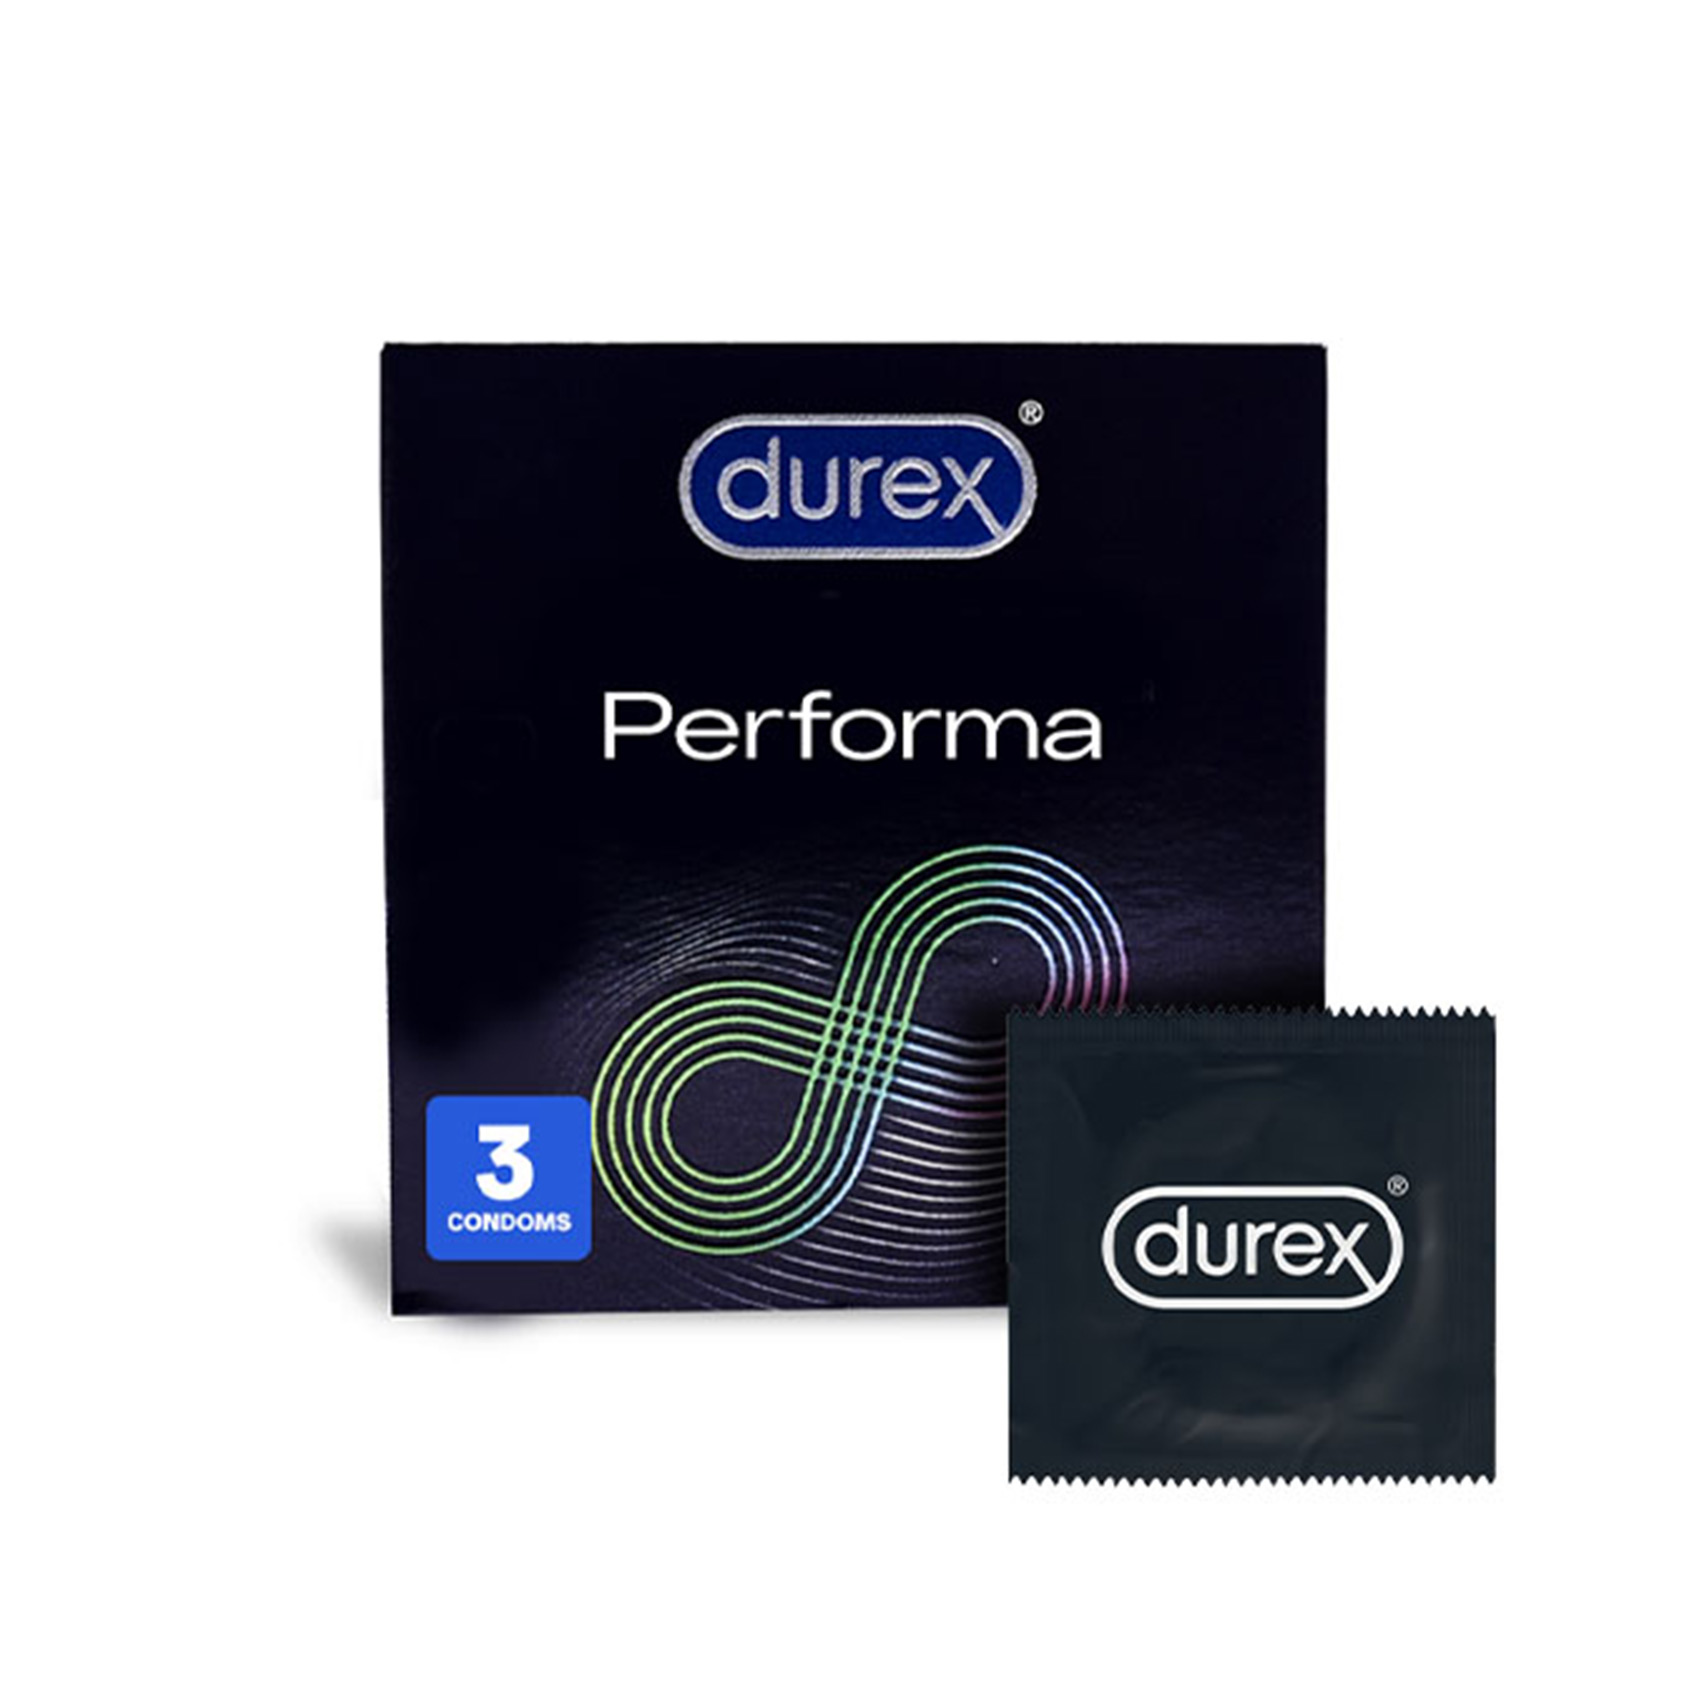 Durex Performa Condoms 3 Pieces